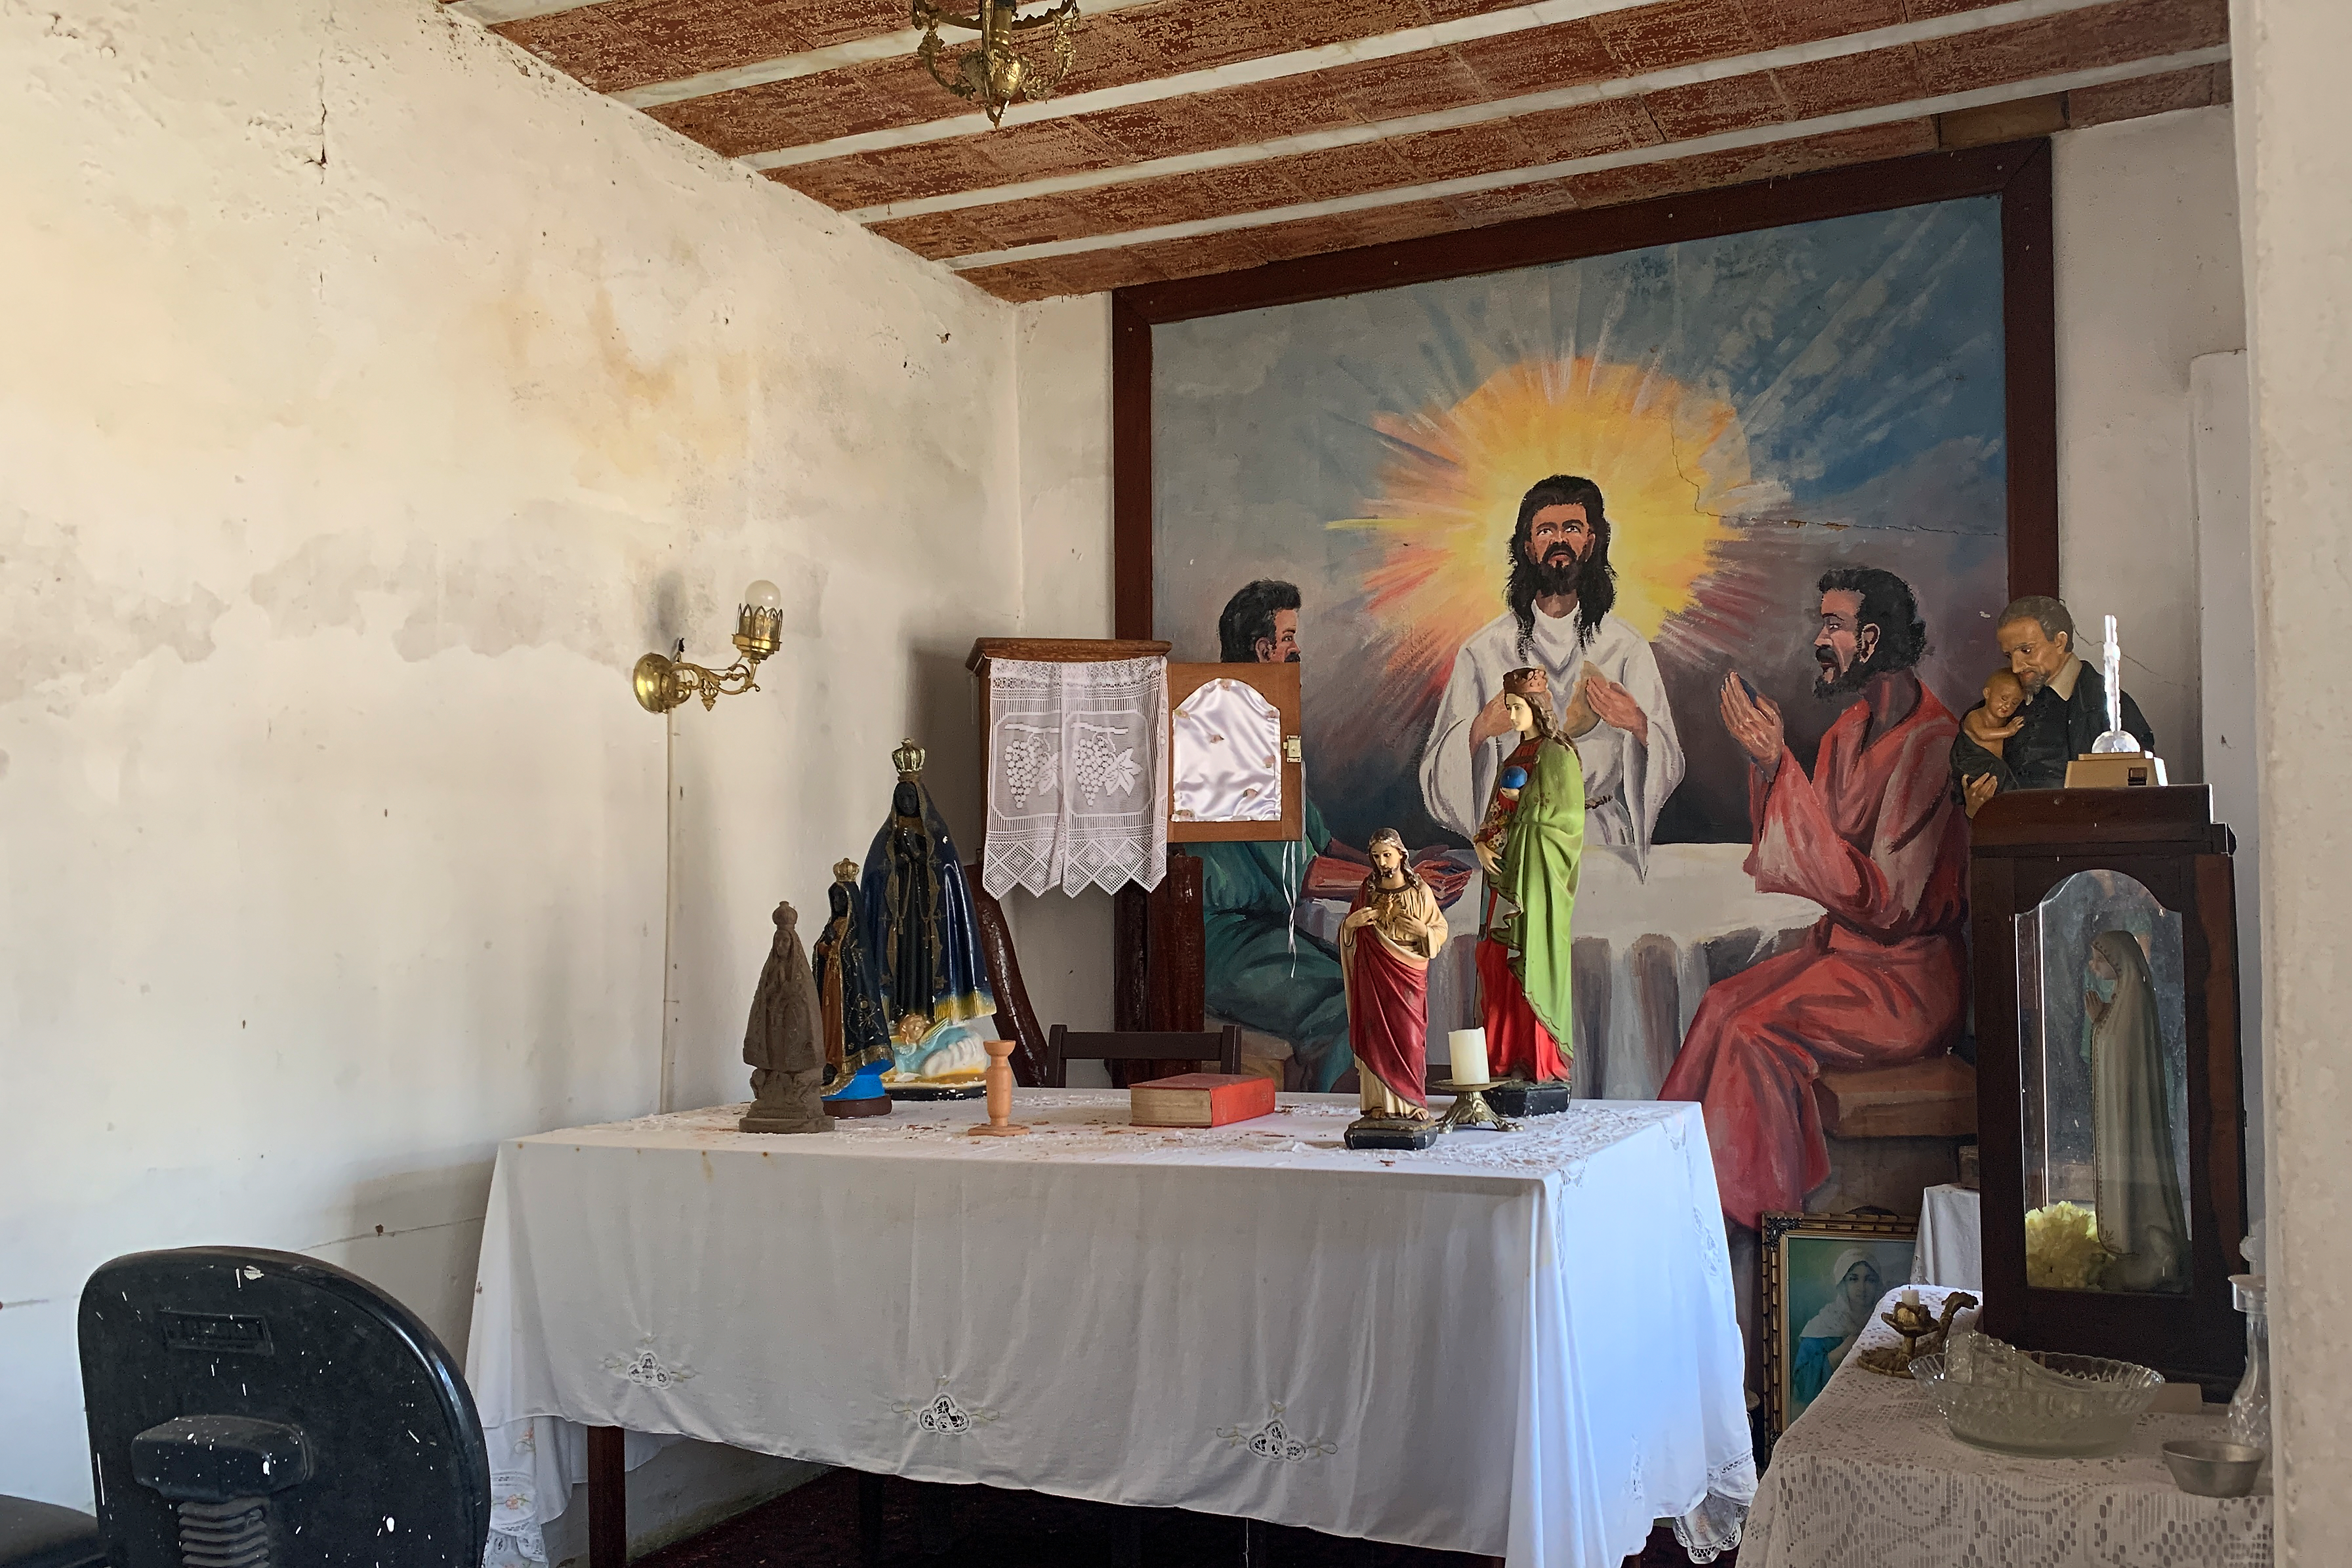 Fotografia digital de uma sala com figuras religiosas e uma imagem de Jesus Cristo ao fundo. Há infiltrações nas paredes e tijolos aparentes no teto.